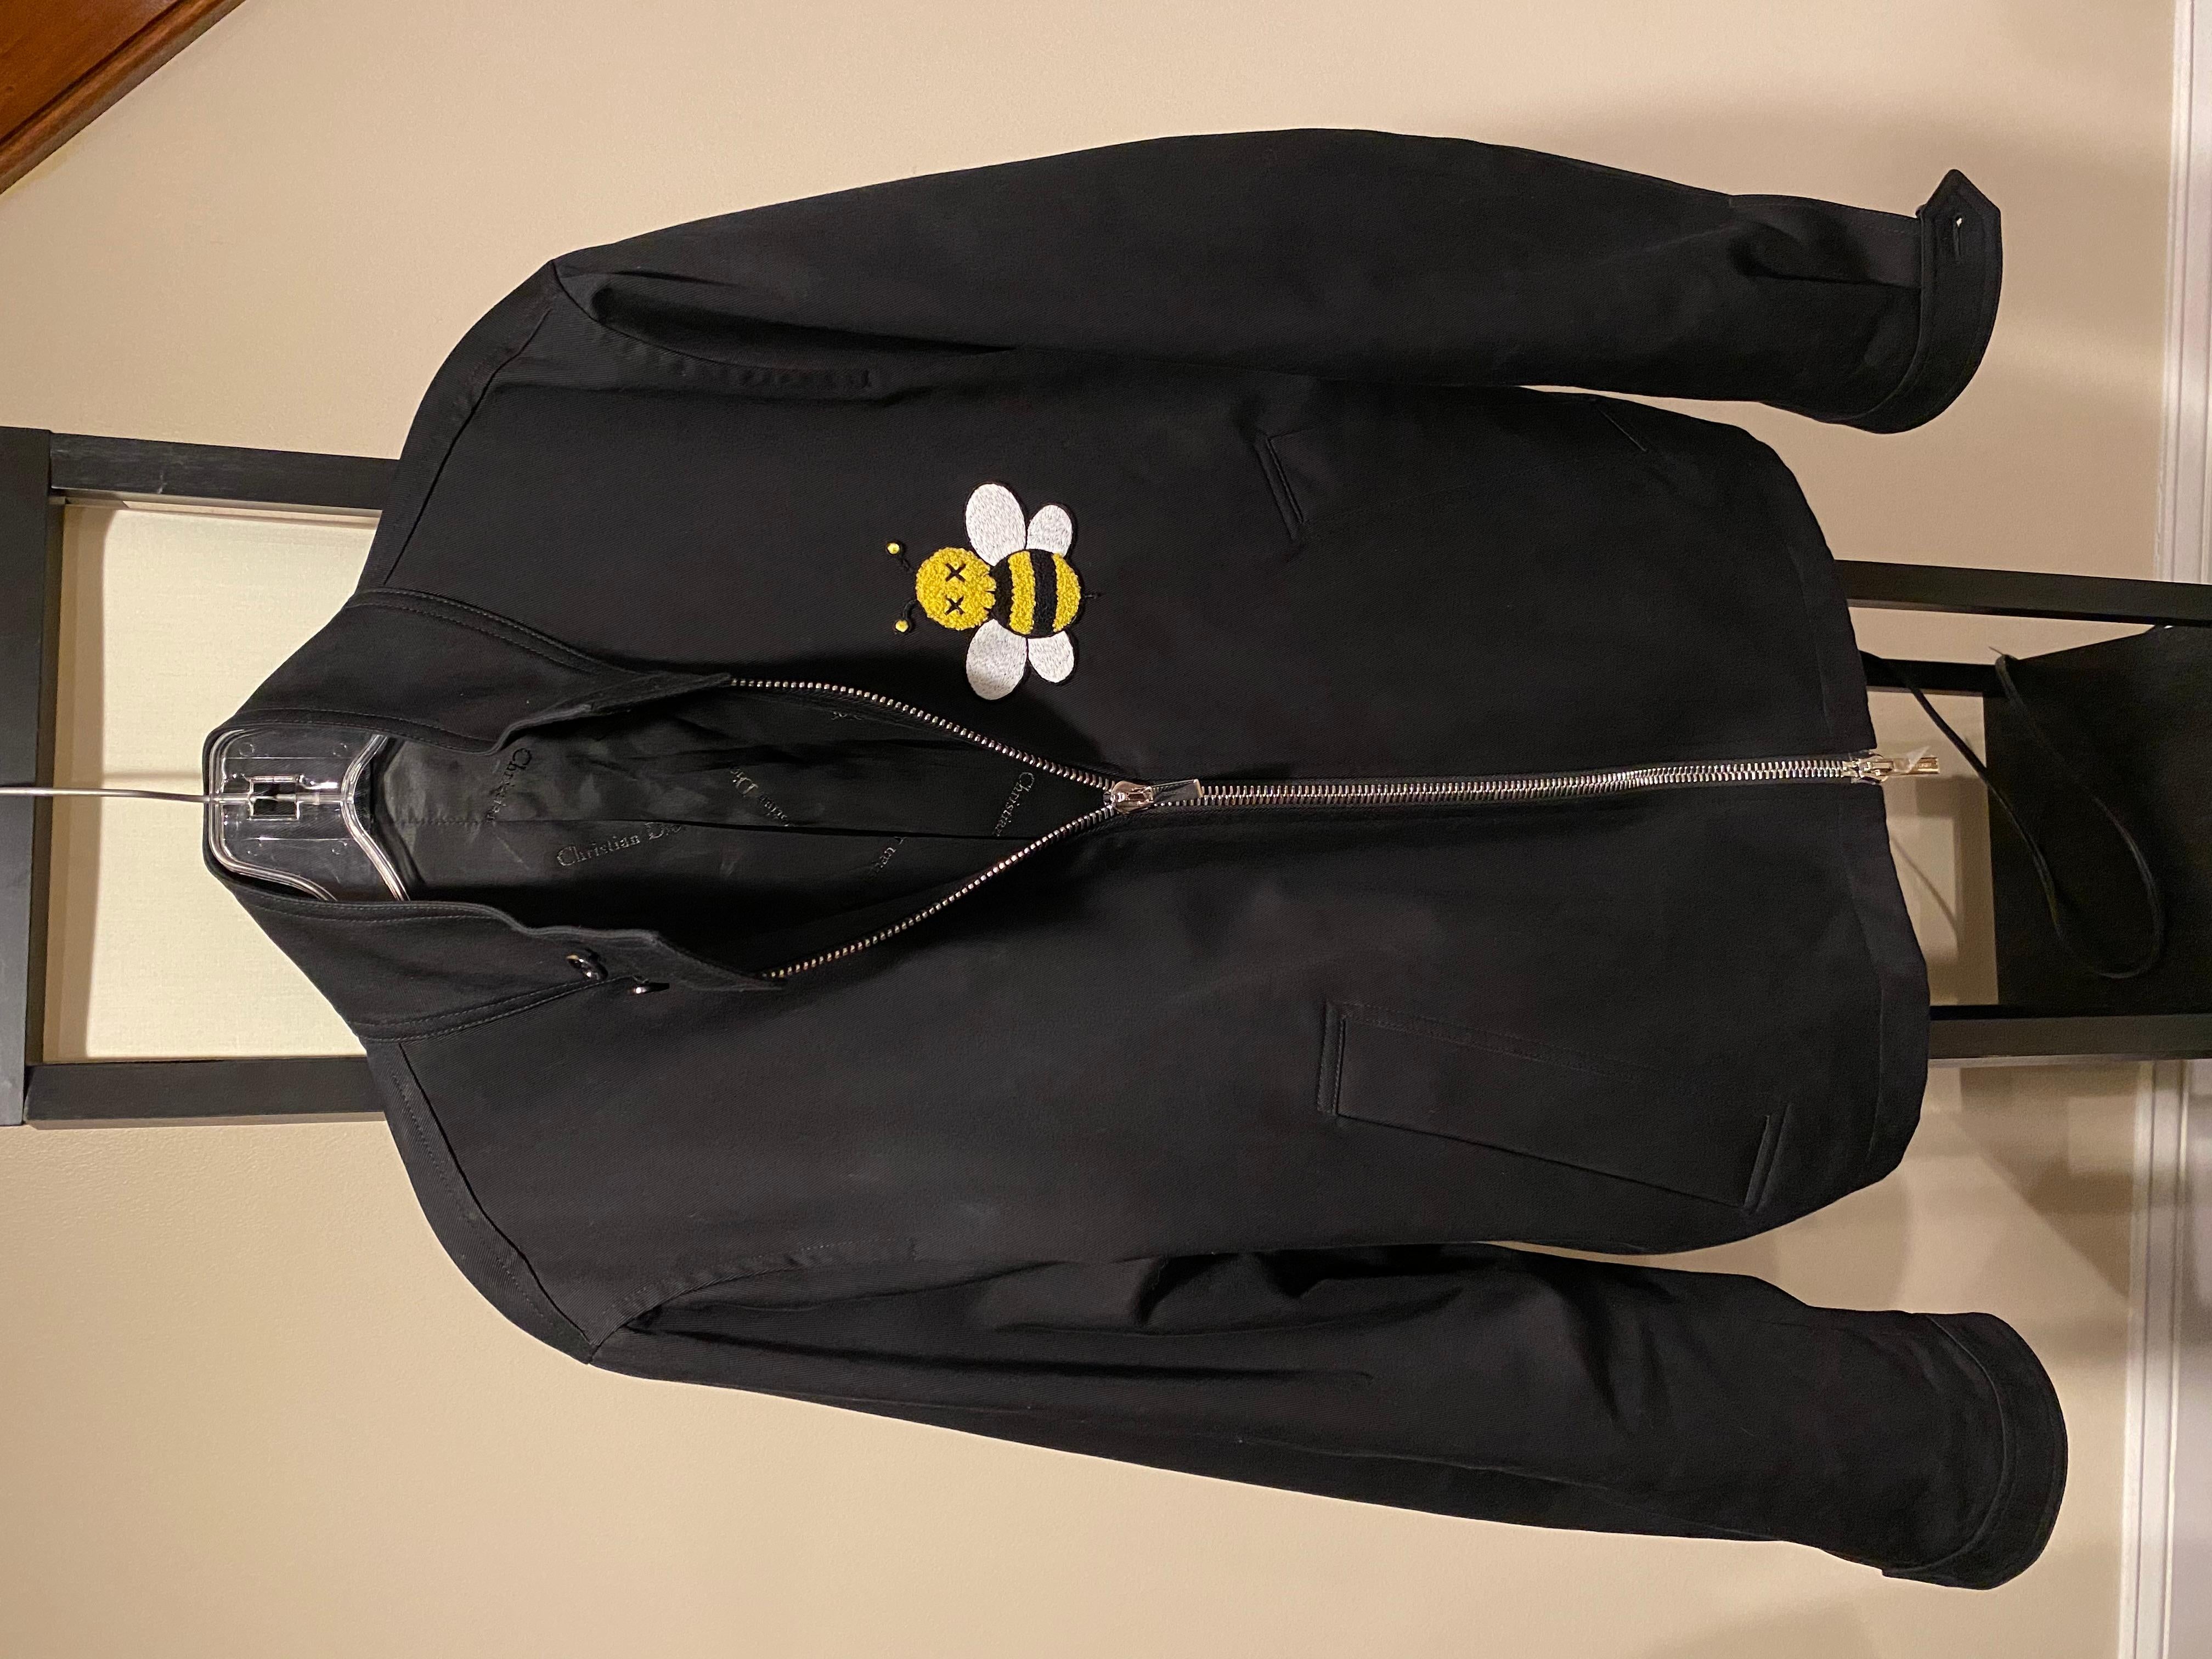 Kaws x Dior Bee Drill Jacke
Größe 50 (passt einer US-Größe)
Toller Zustand (siehe Bilder)
Seide auf der Innenseite der Jacke.

Äußerst seltene Jacke. Niemand hat dieses Stück auf grailed oder auf anderen Seiten außer einer 52 auf stockx, die 10k